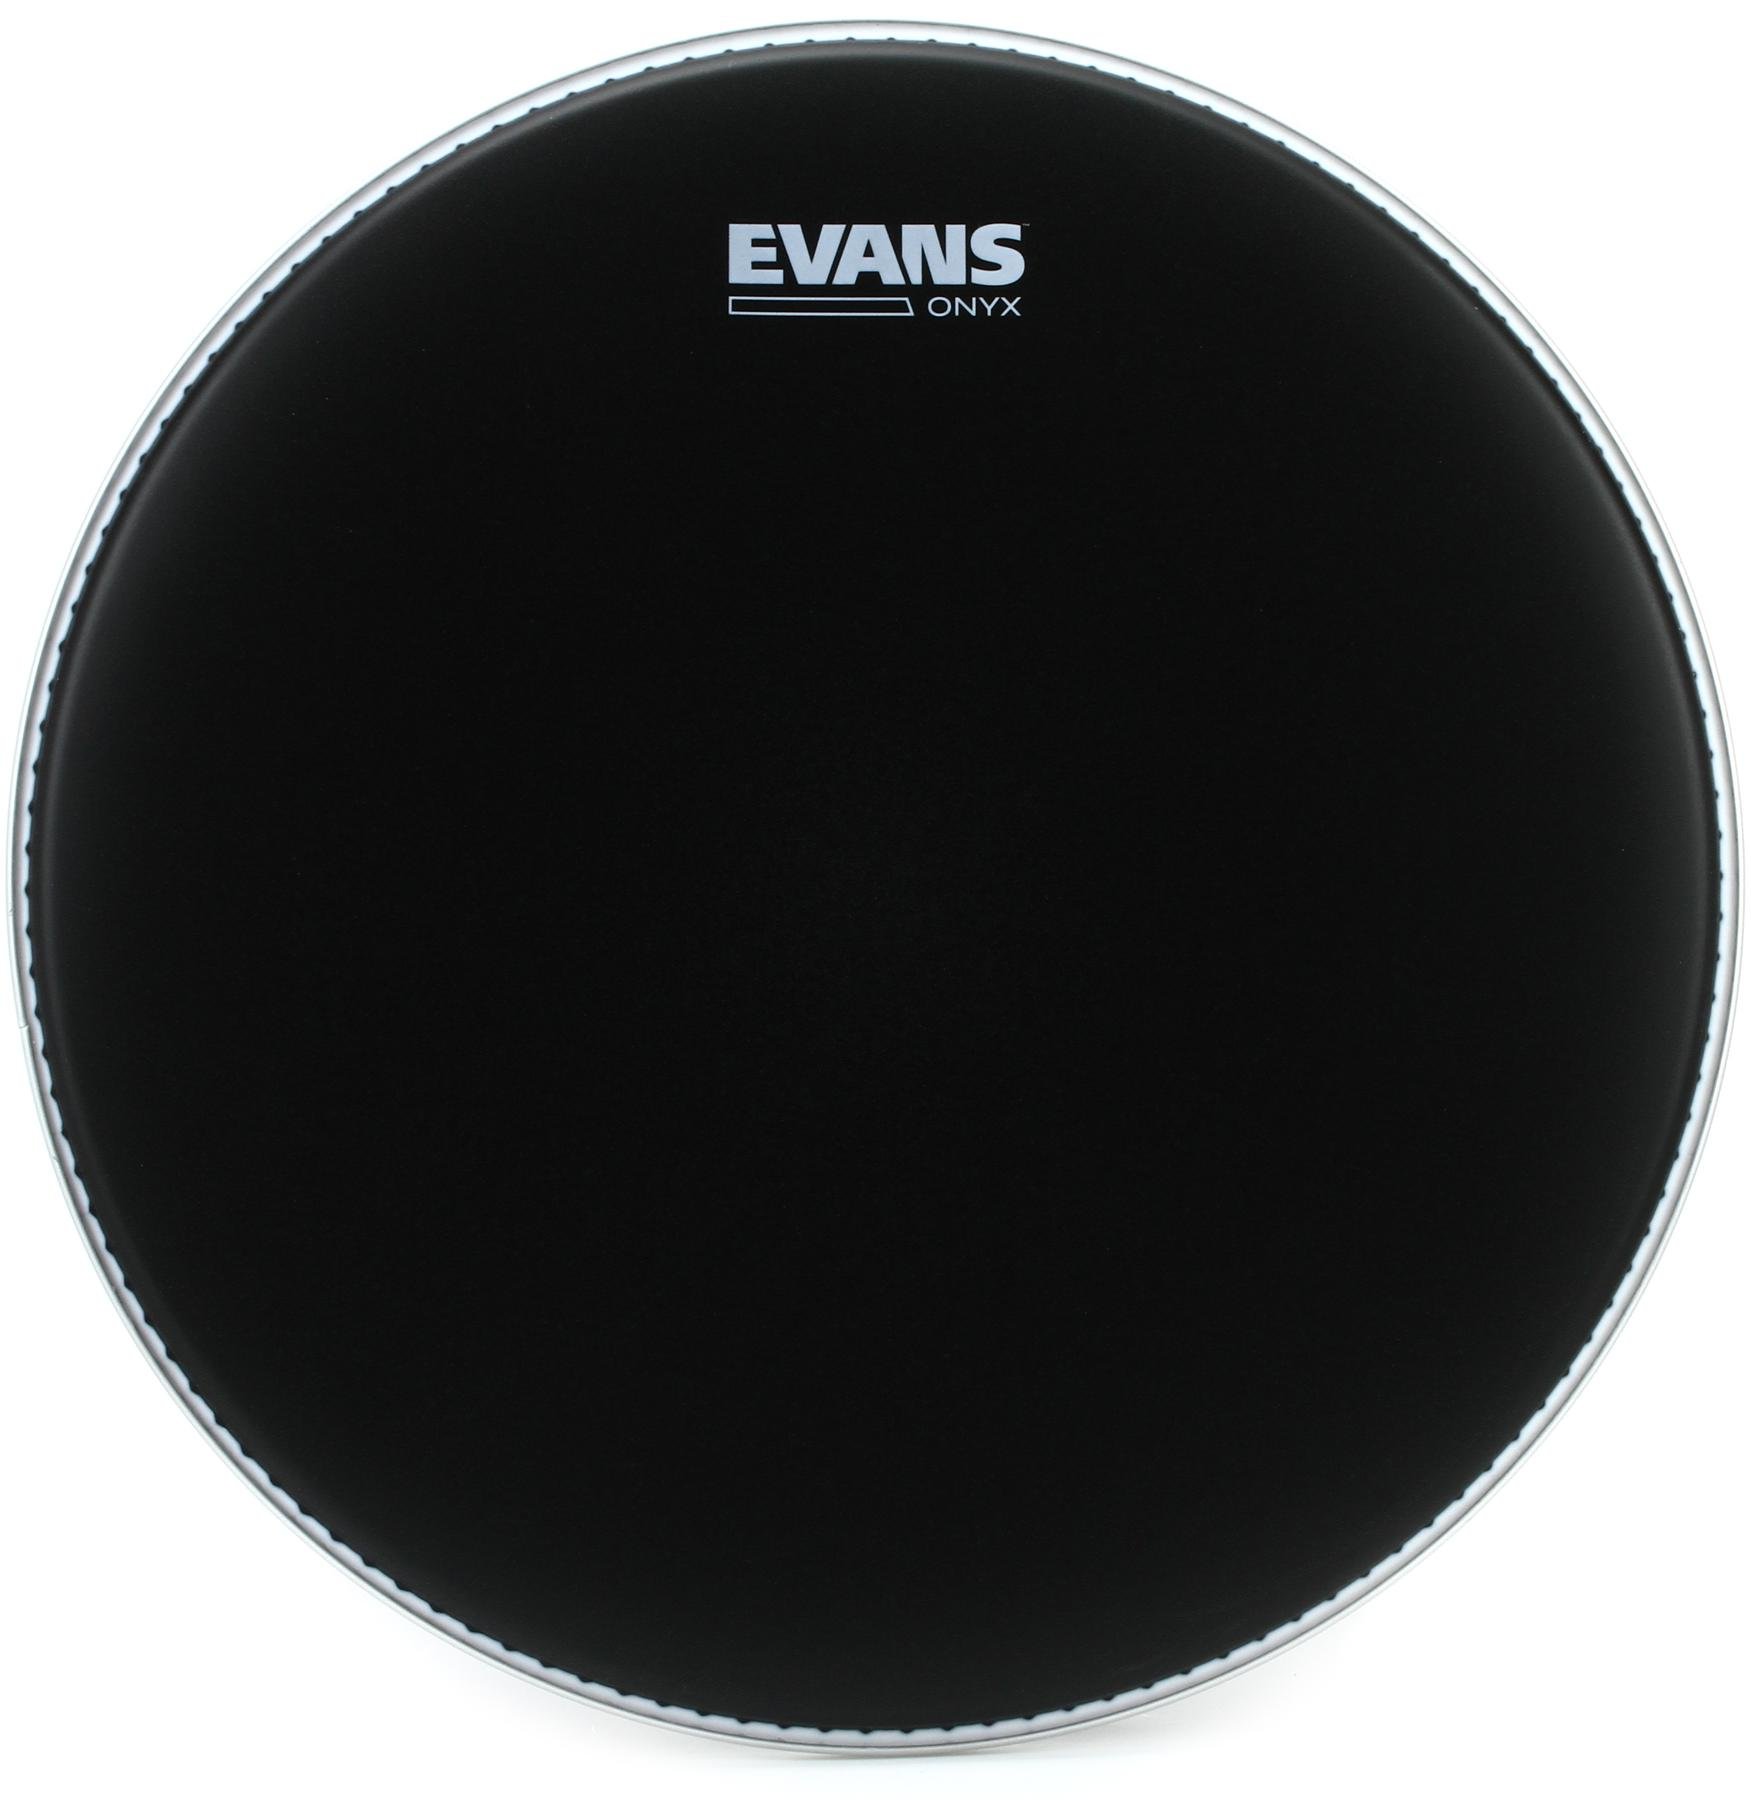 Evans Onyx Series Drumhead - 14 inch 